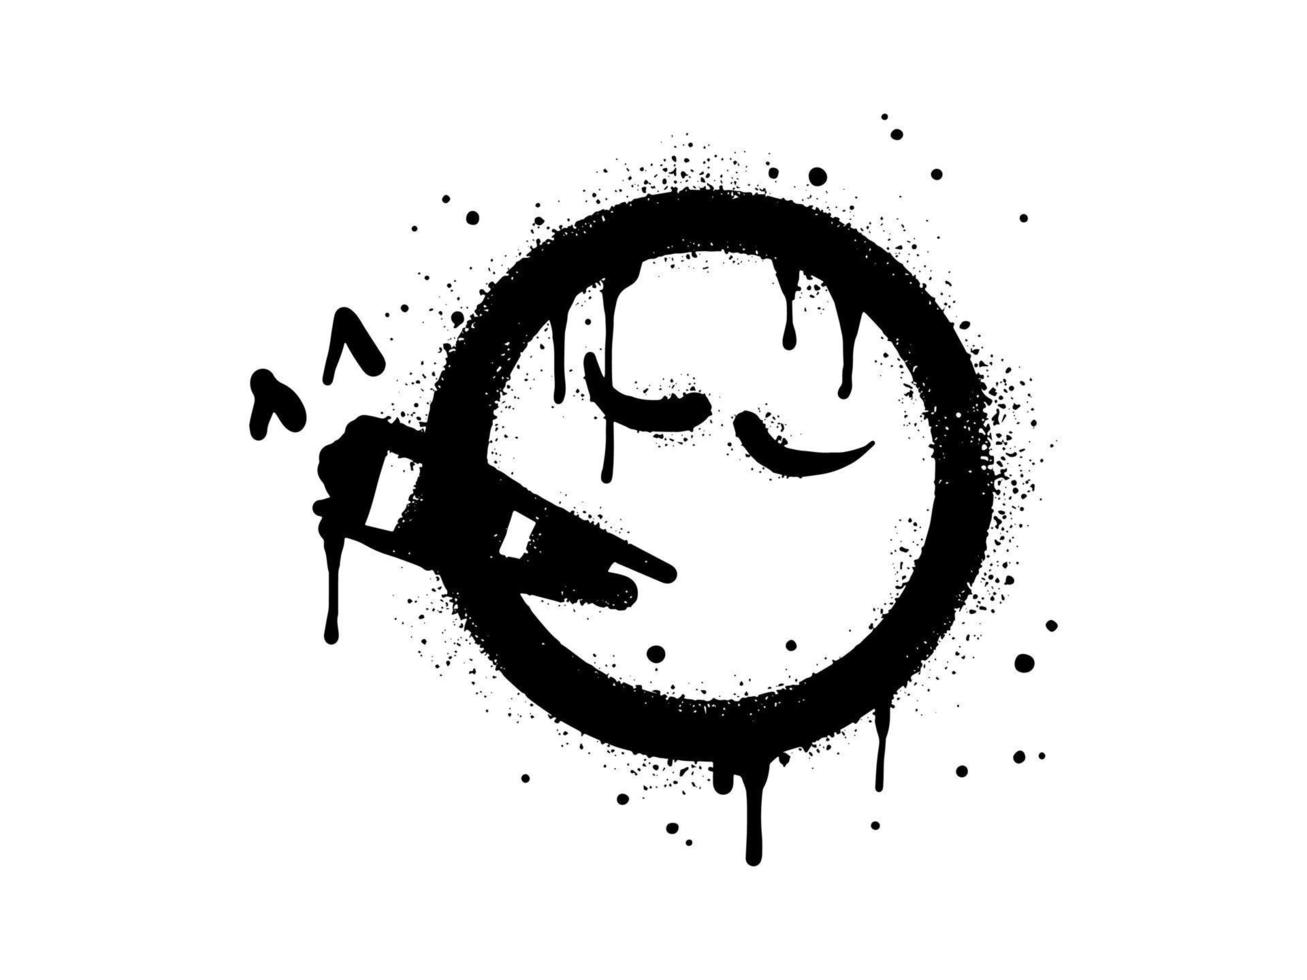 rökning ansikte uttryckssymbol karaktär. spray målad graffiti rökning ansikte i svart över vit. isolerat på vit bakgrund. vektor illustration